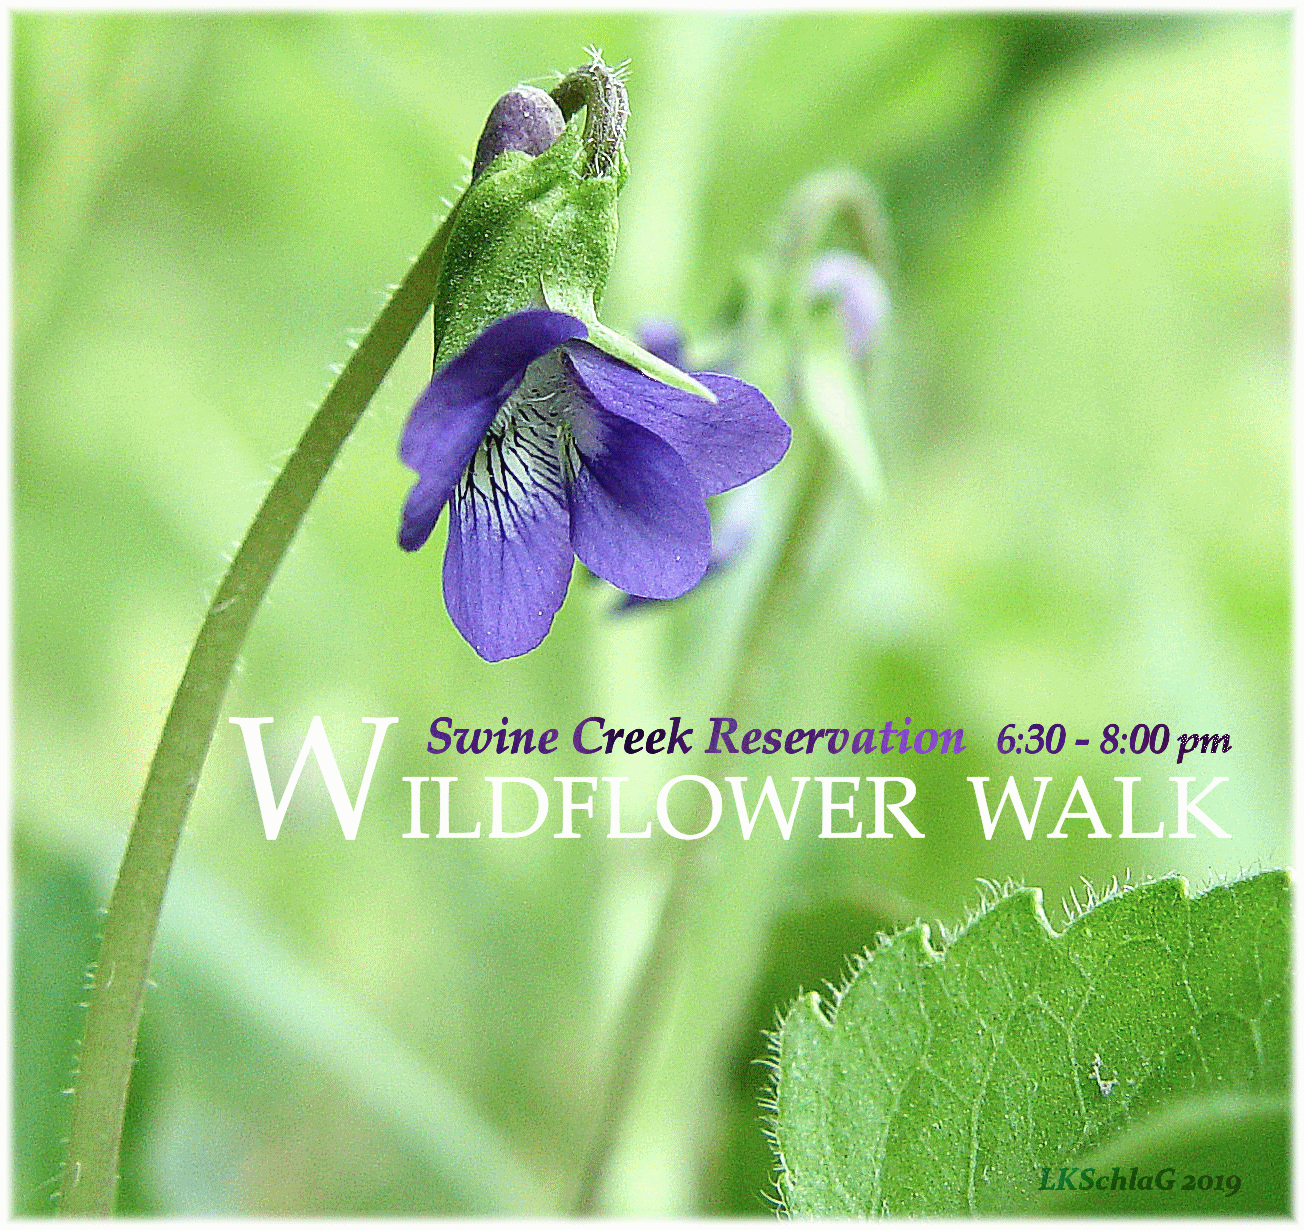 midweek wildflower walk 22 May 2019 at Swine Creek Reservation